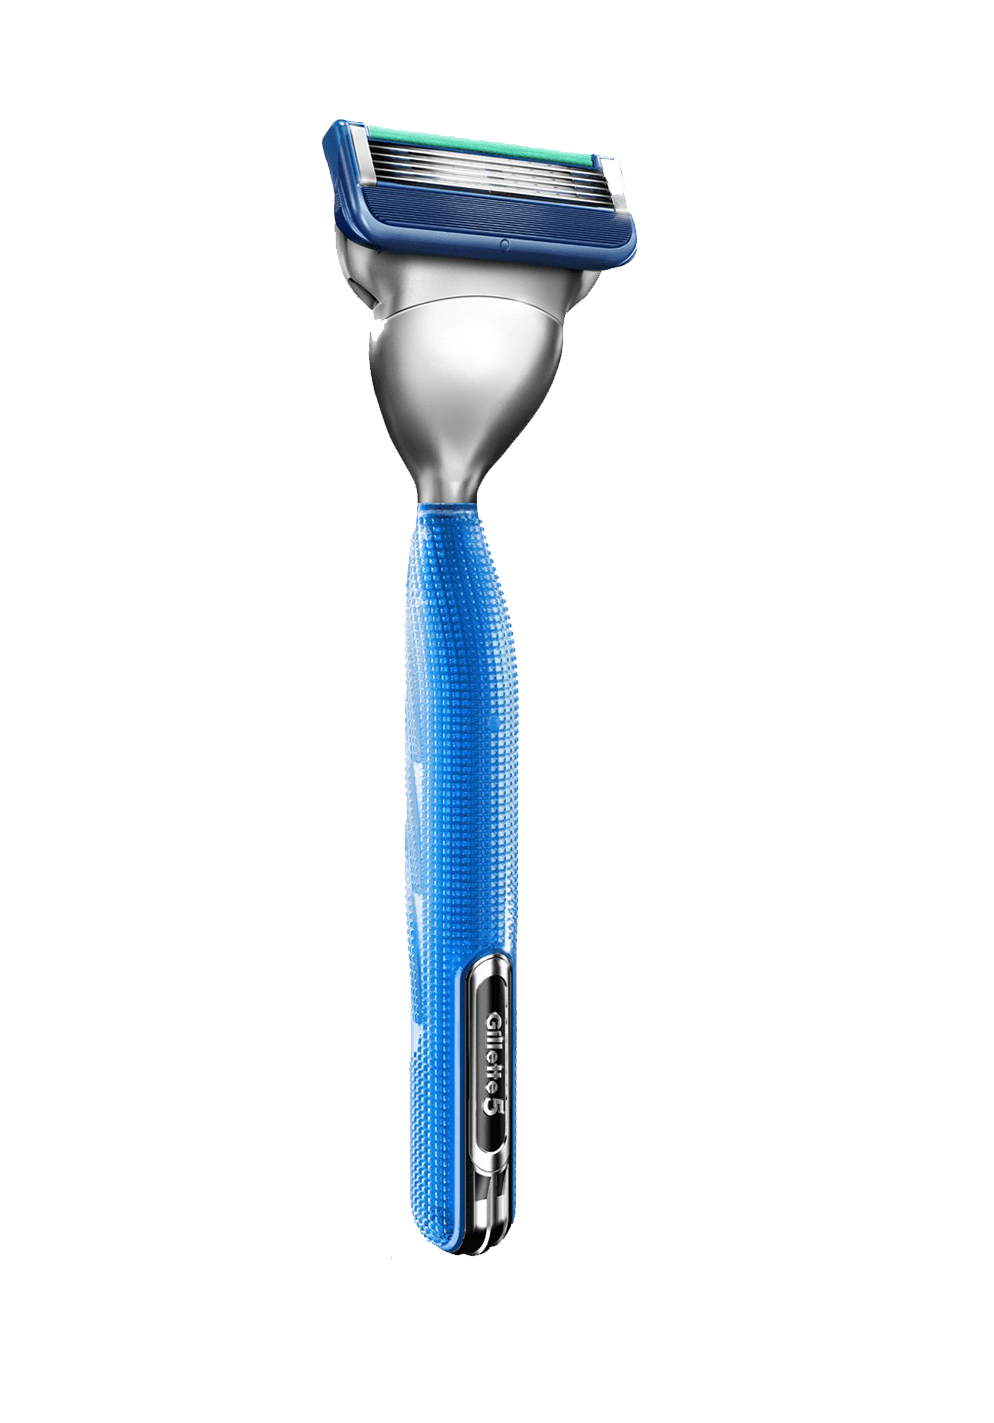 Gillette Shaving Product PNG Download Image